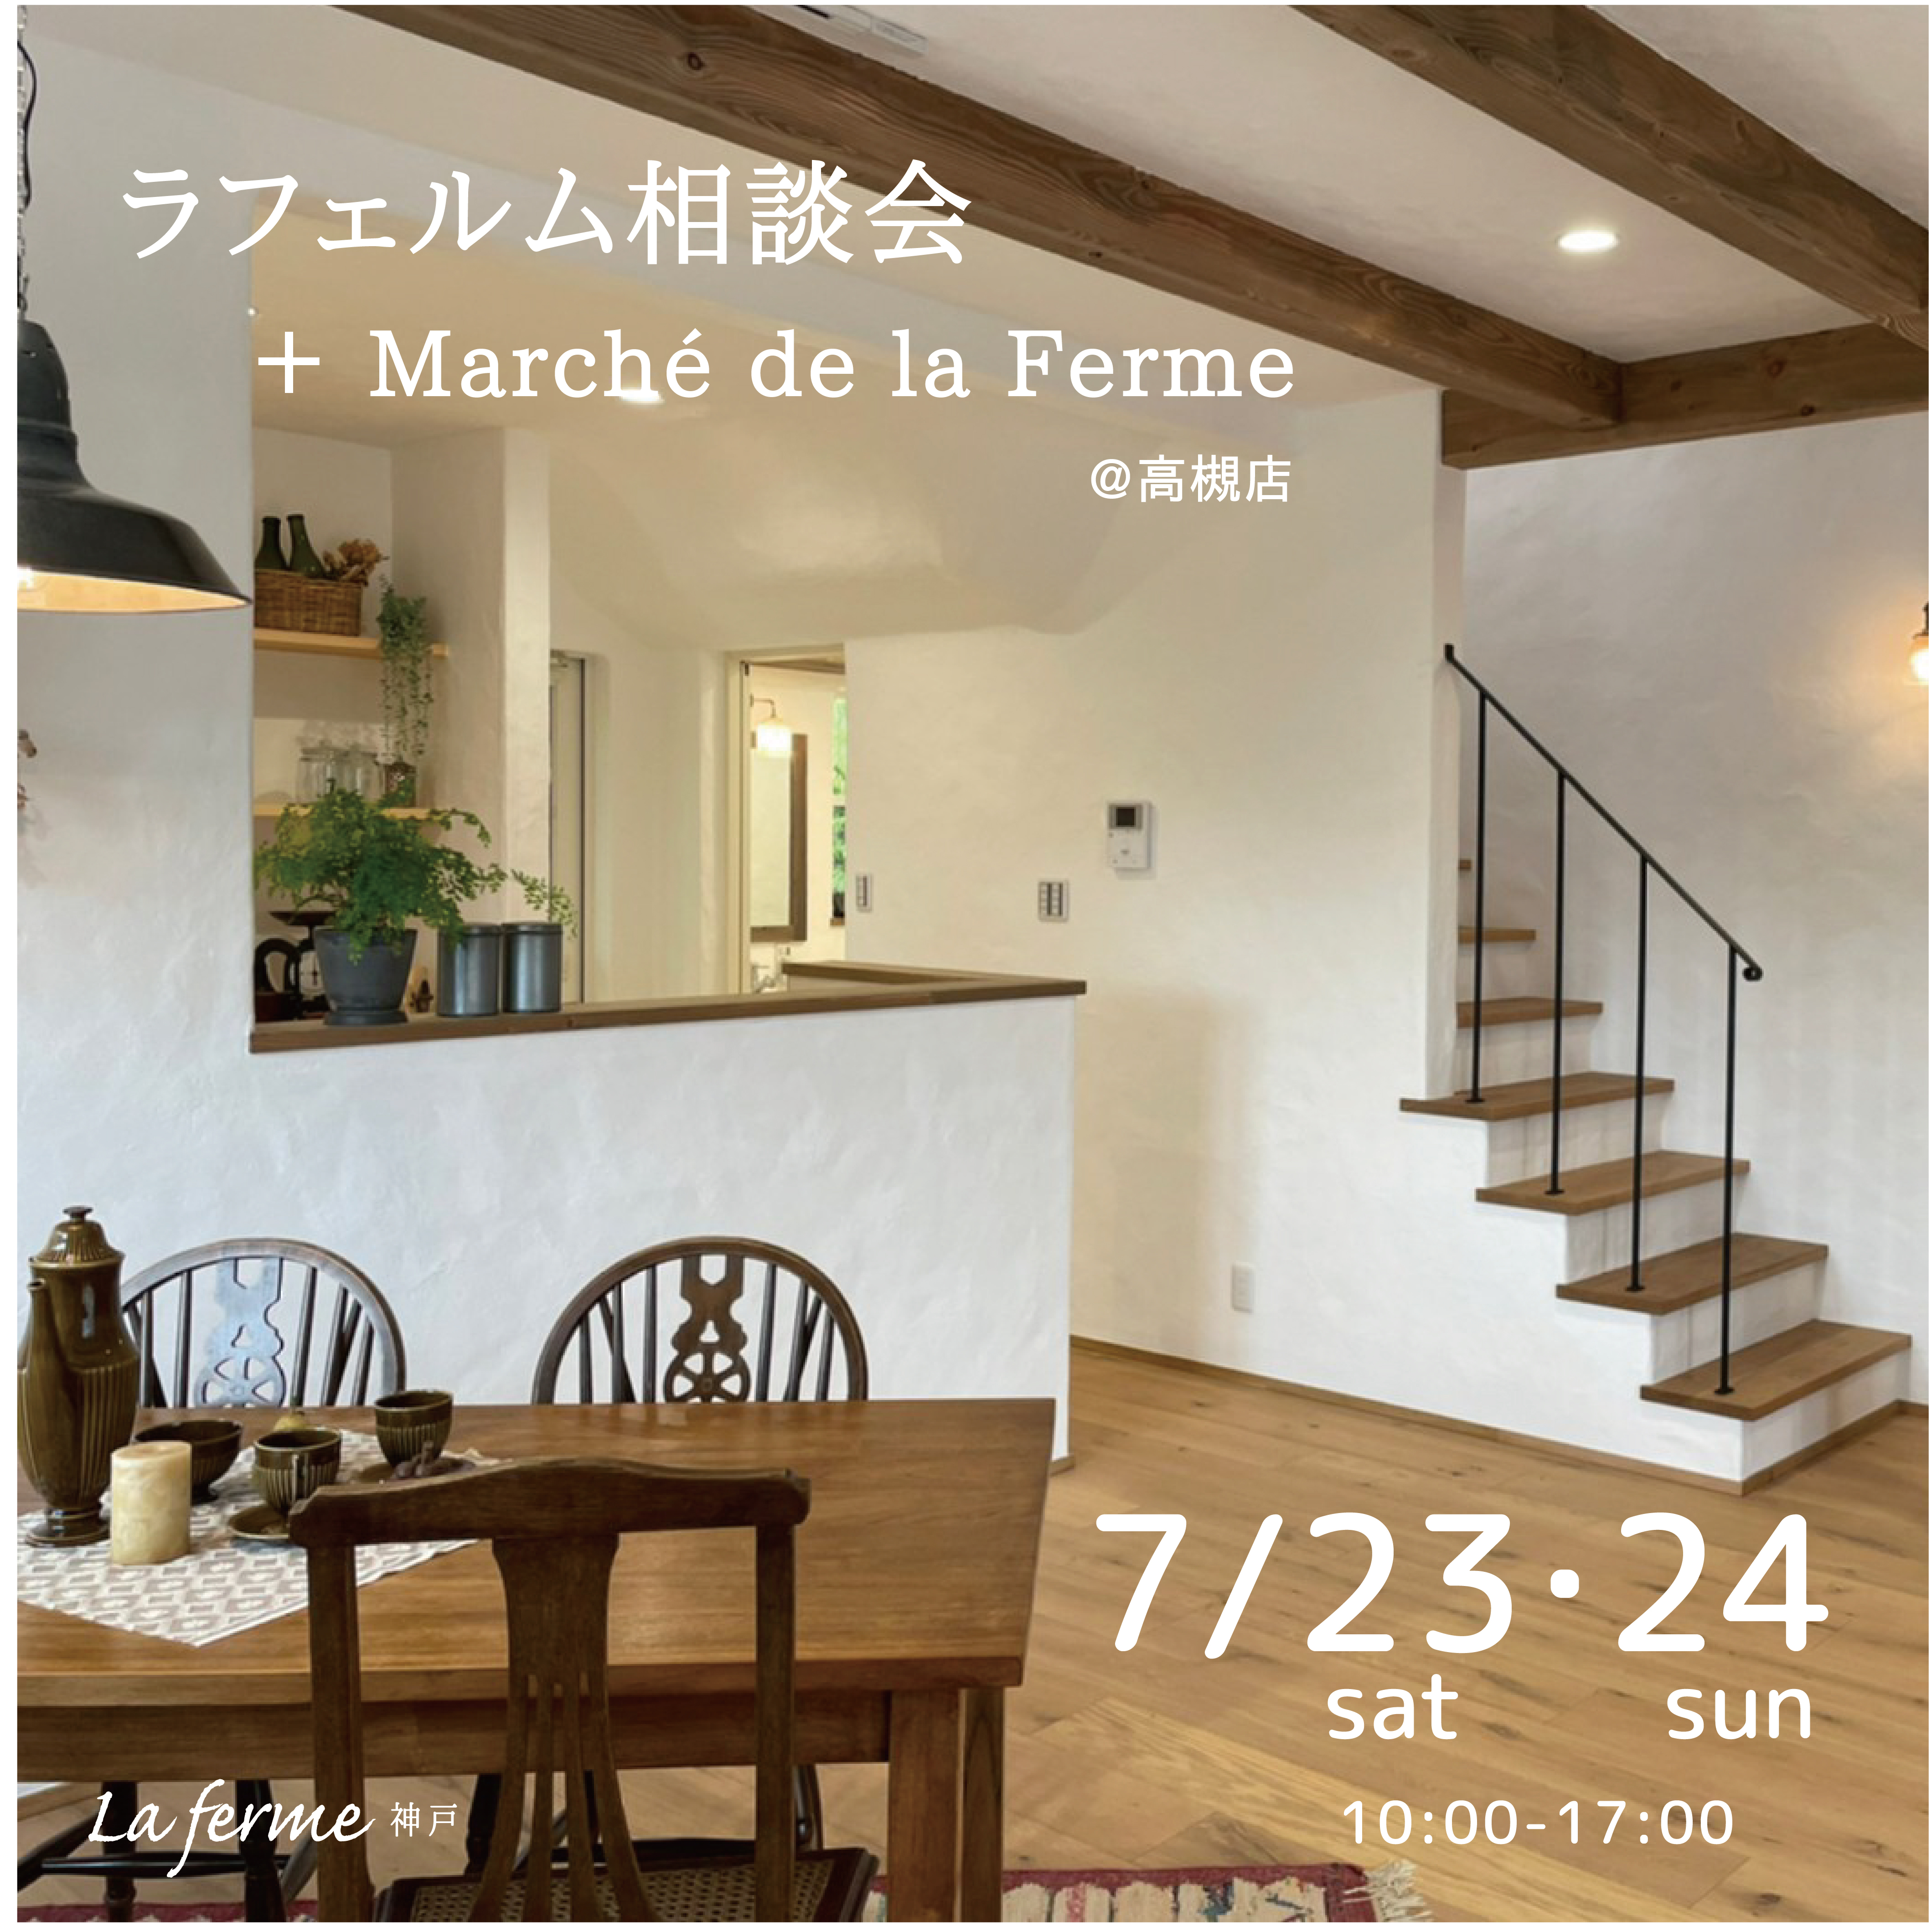 ラフェルム相談会+Marché de la Ferme　7/23・24